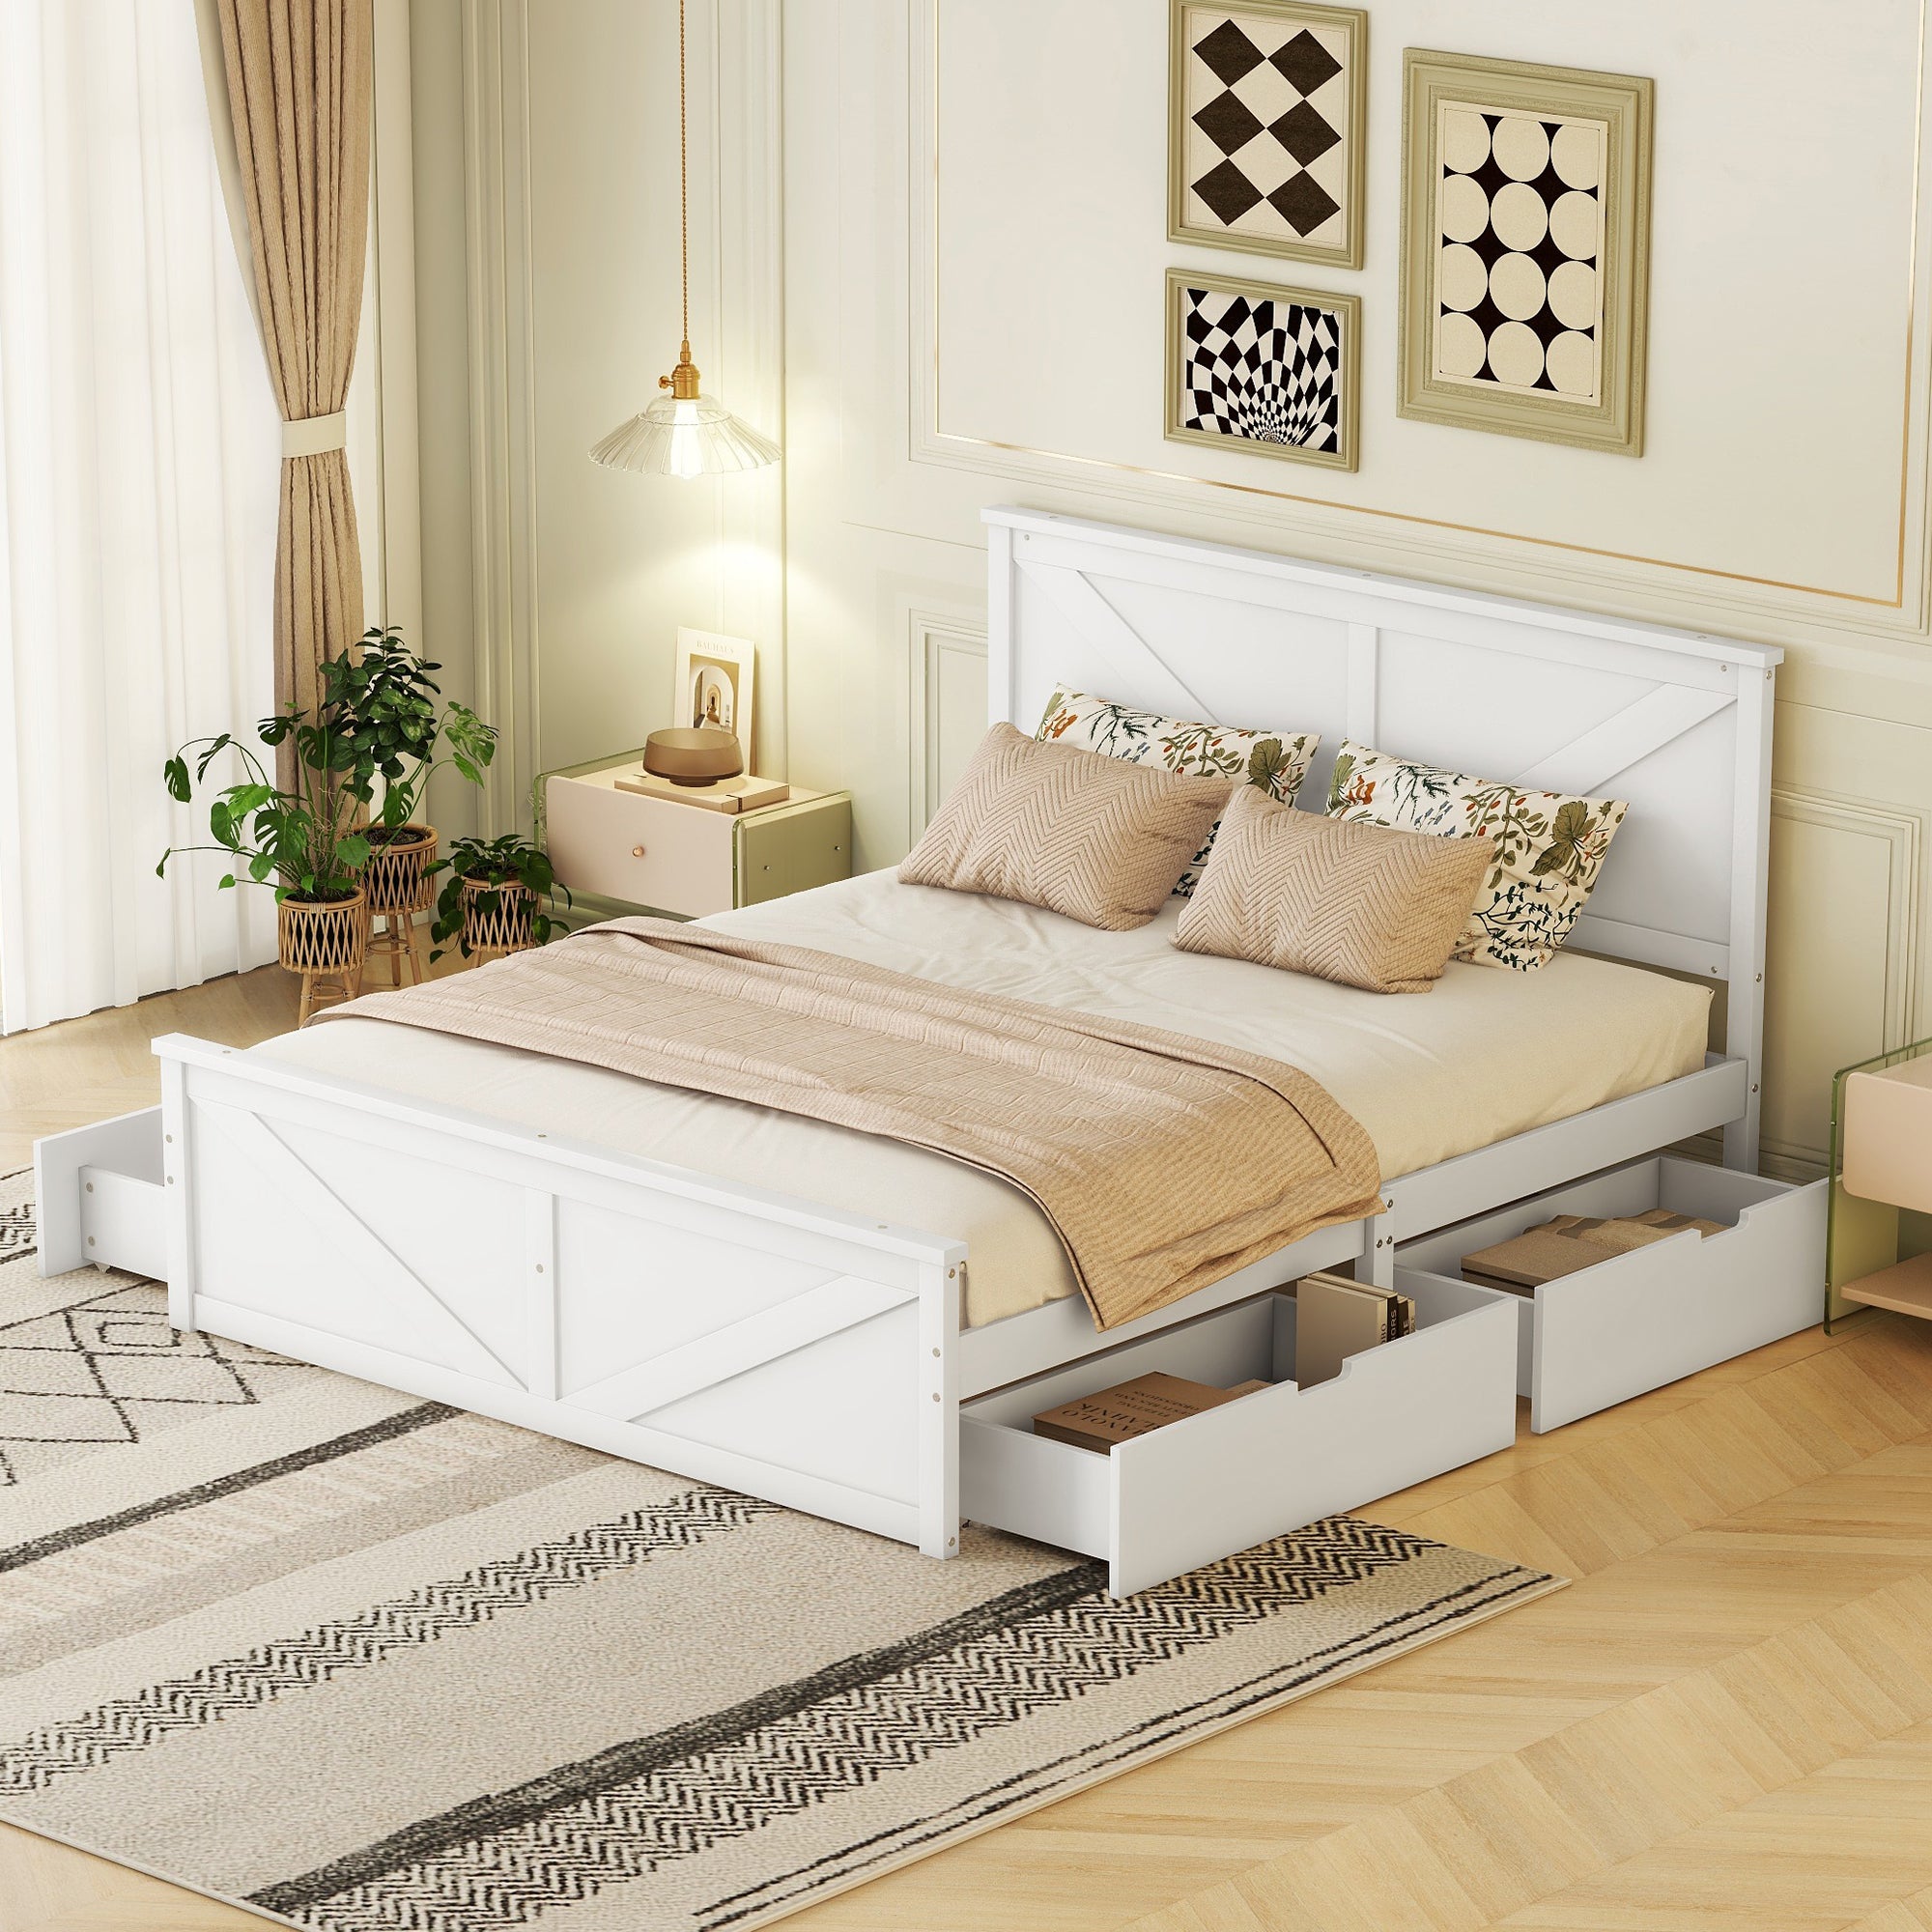 okwish 160x200 cm einfaches Plattformbett aus Holz, schlicht und stilvoll, mit vier Schubladen, weiß